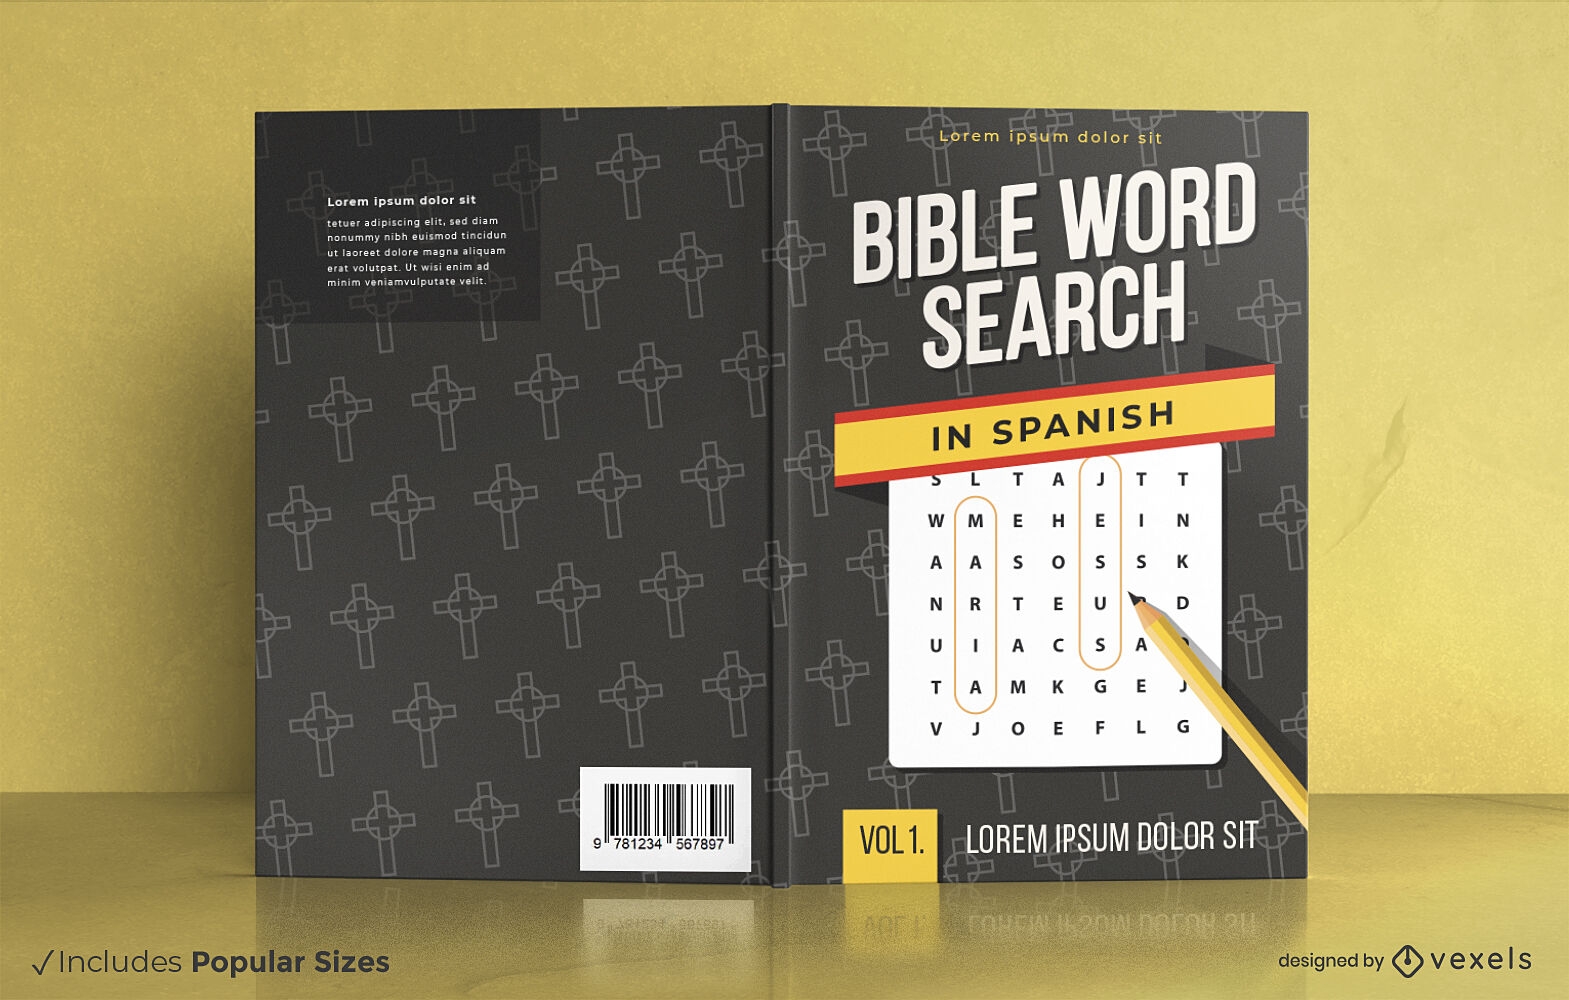 Buchcover-Design f?r die spanische Bibelwortsuche